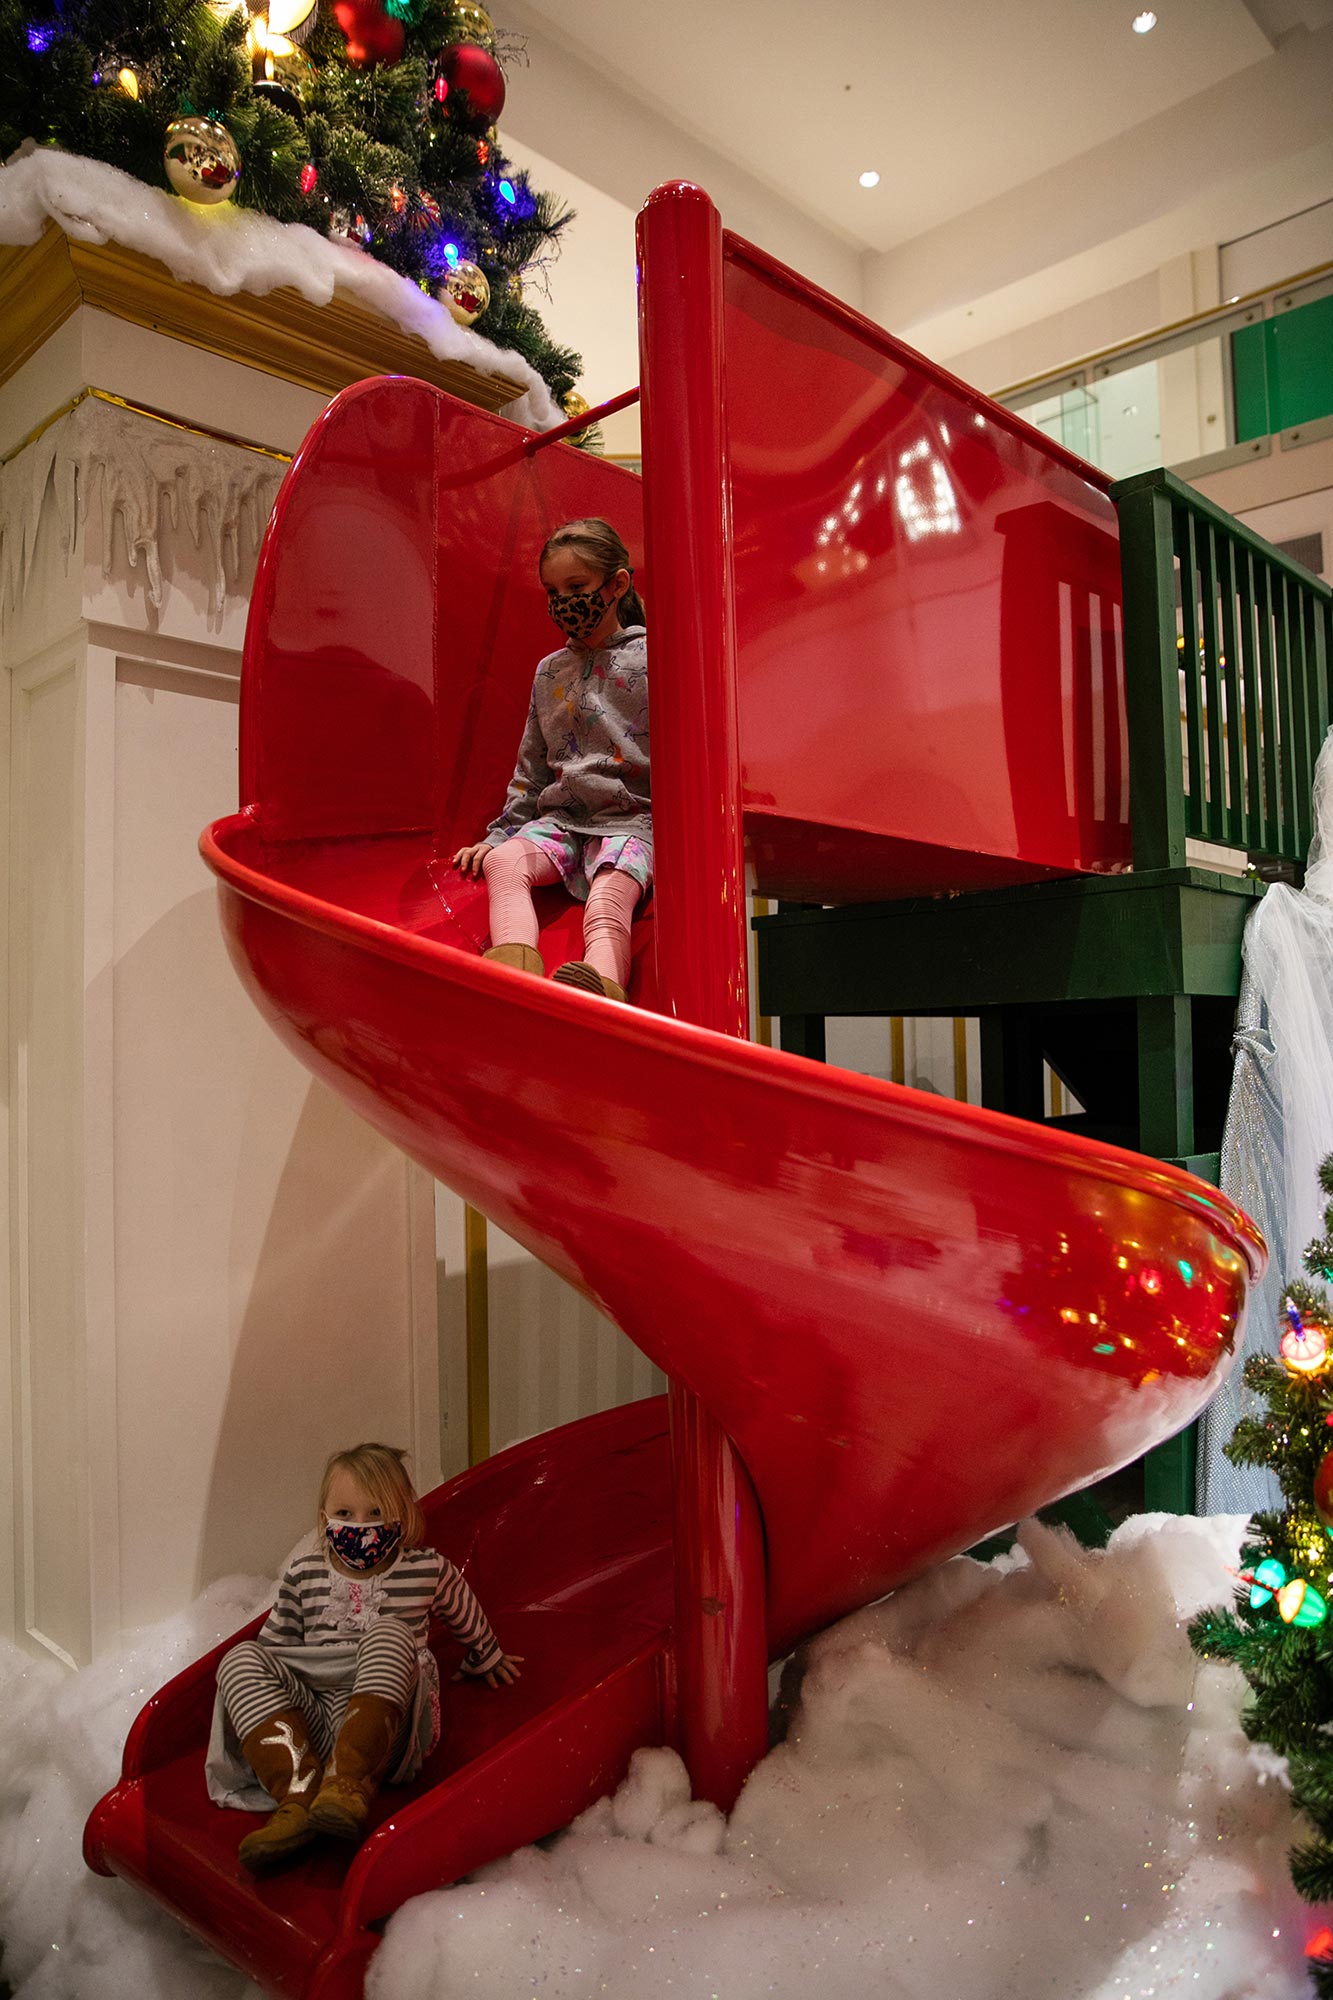 Visit Santa at Hawthorn Mall. Credit: Prudence Photography